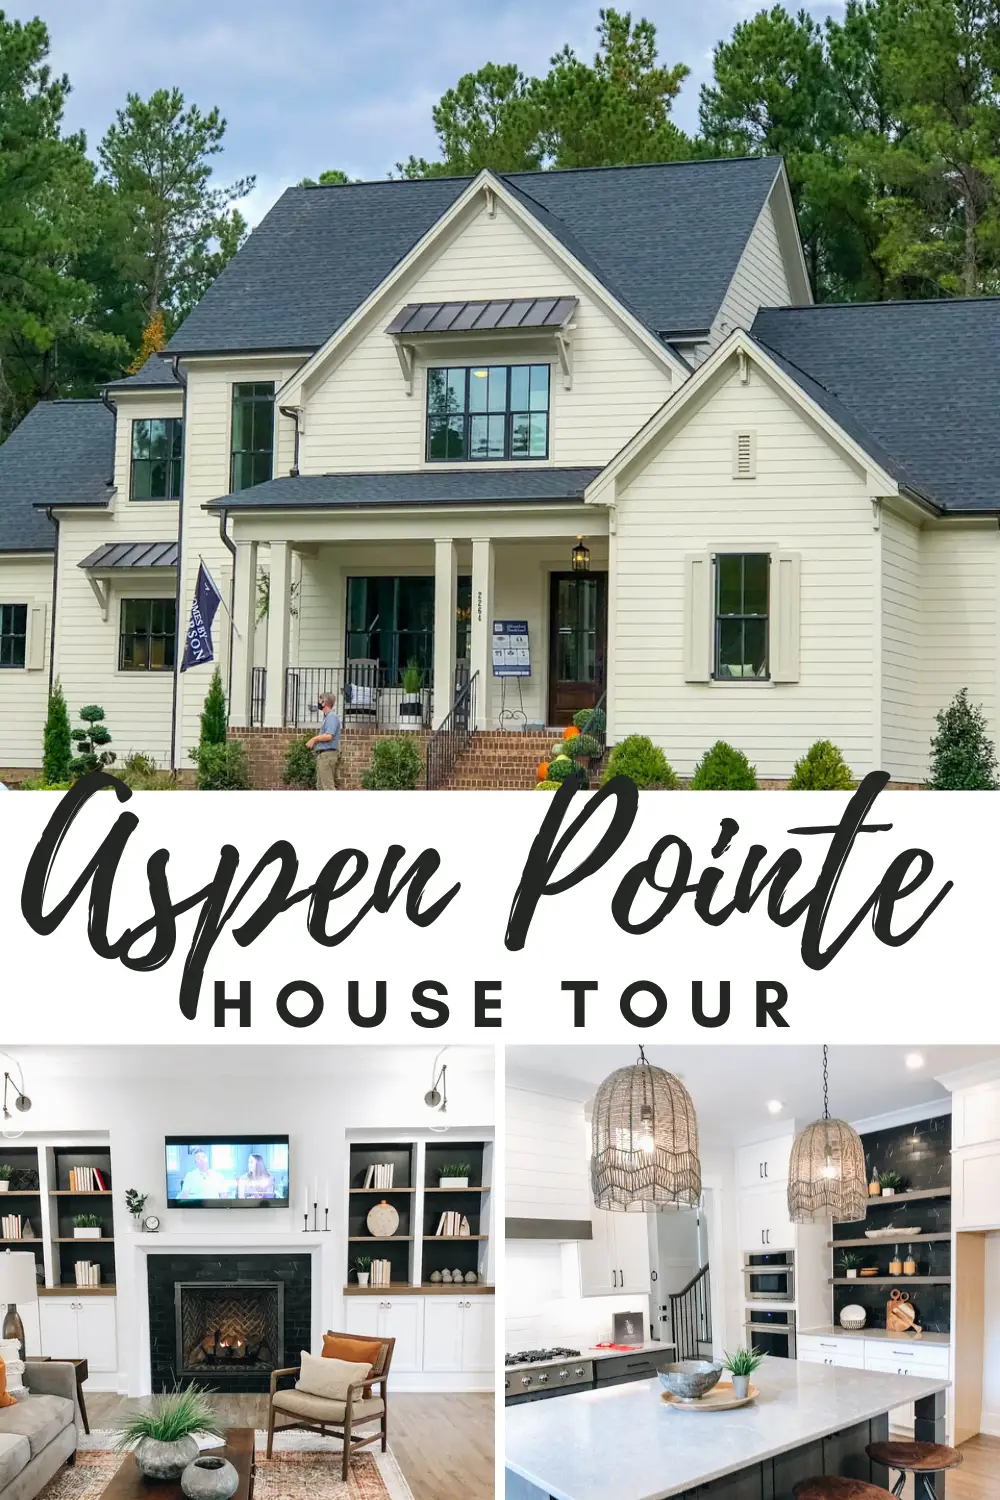 Aspen Pointe House Tour